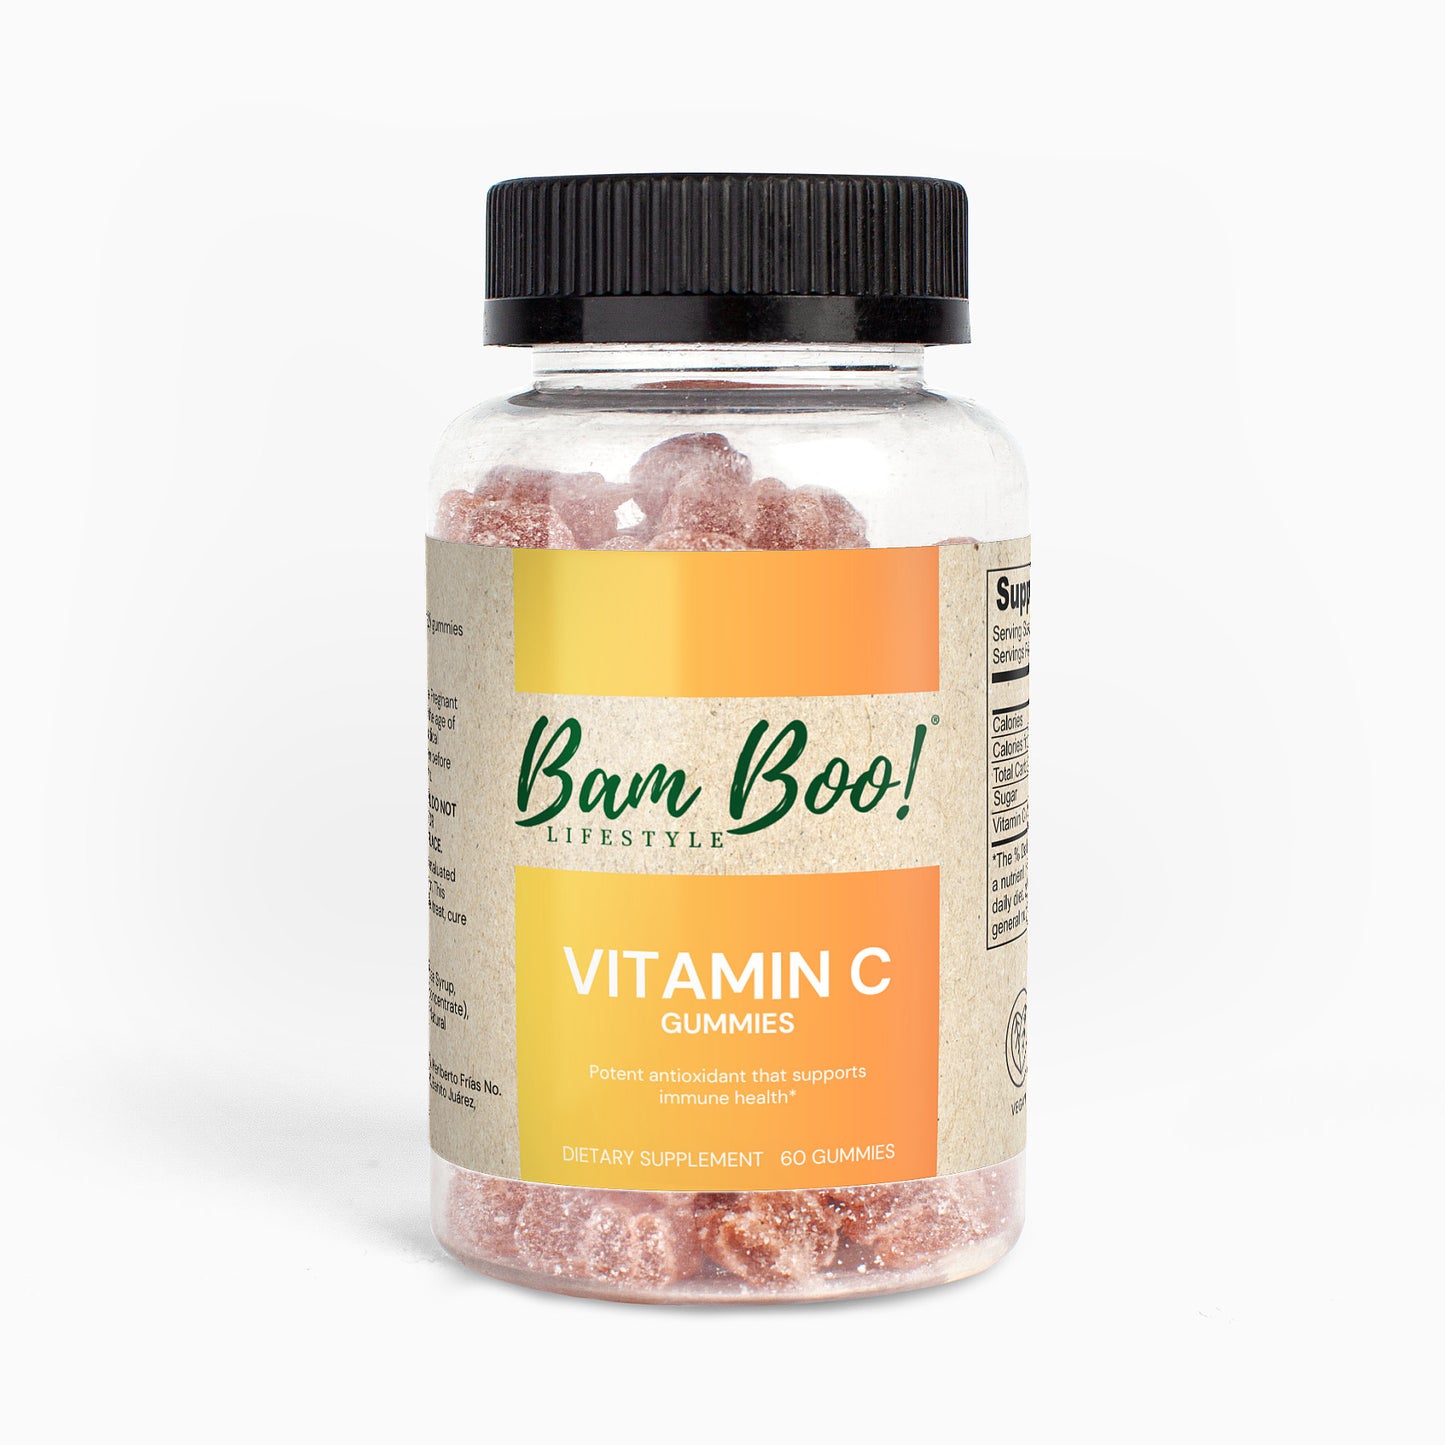 Vitamin C Gummies 60 Gummies Bam Boo! Lifestyle Vitamins &amp; Supplements